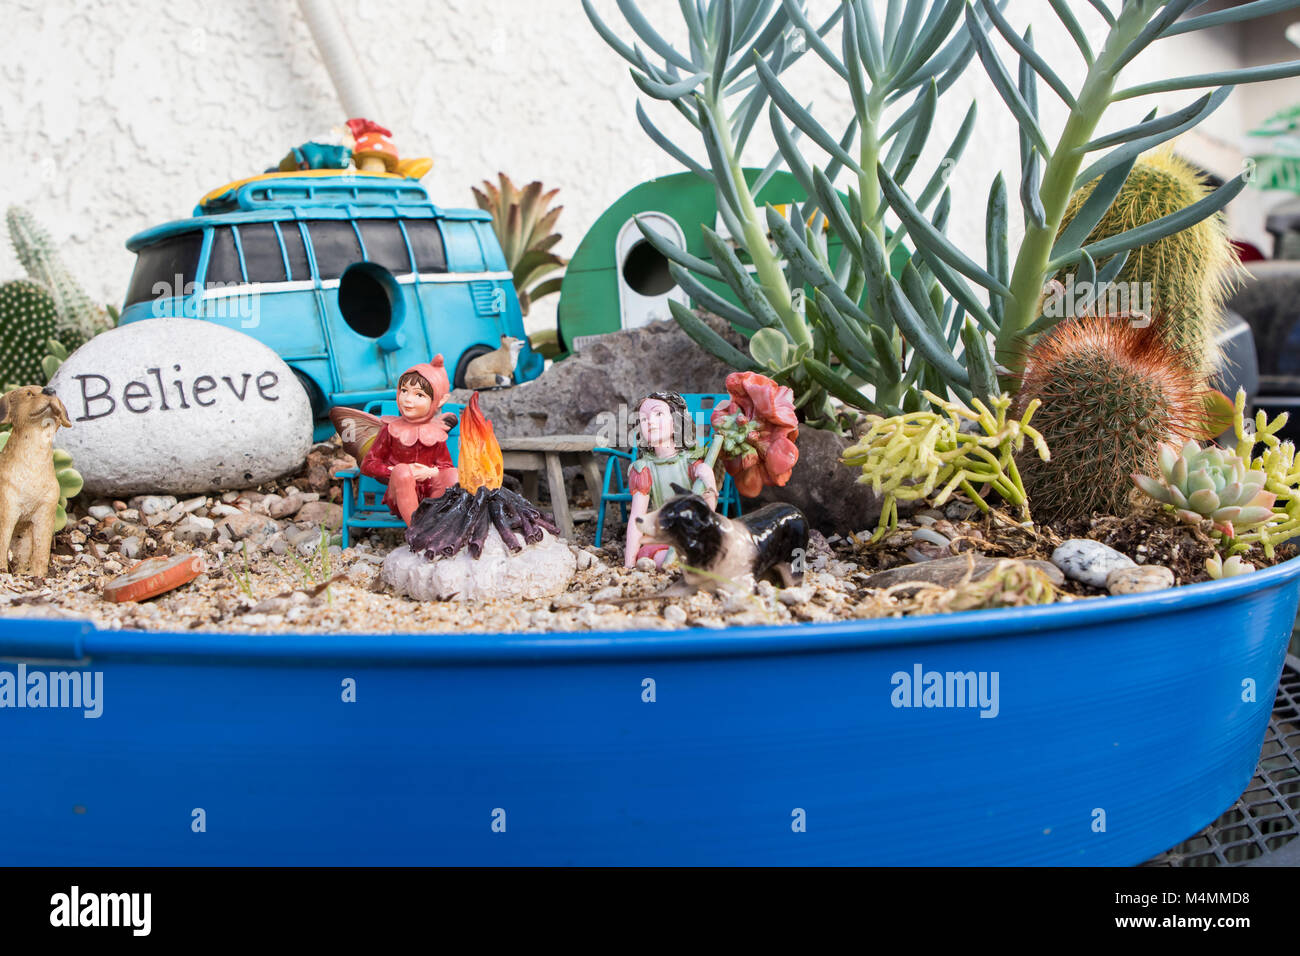 Jardin Cactus. Jardin de fées de cactus miniature dans un semoir de plan d'examen avec une petite pierre avec le mot croire sur lui Banque D'Images